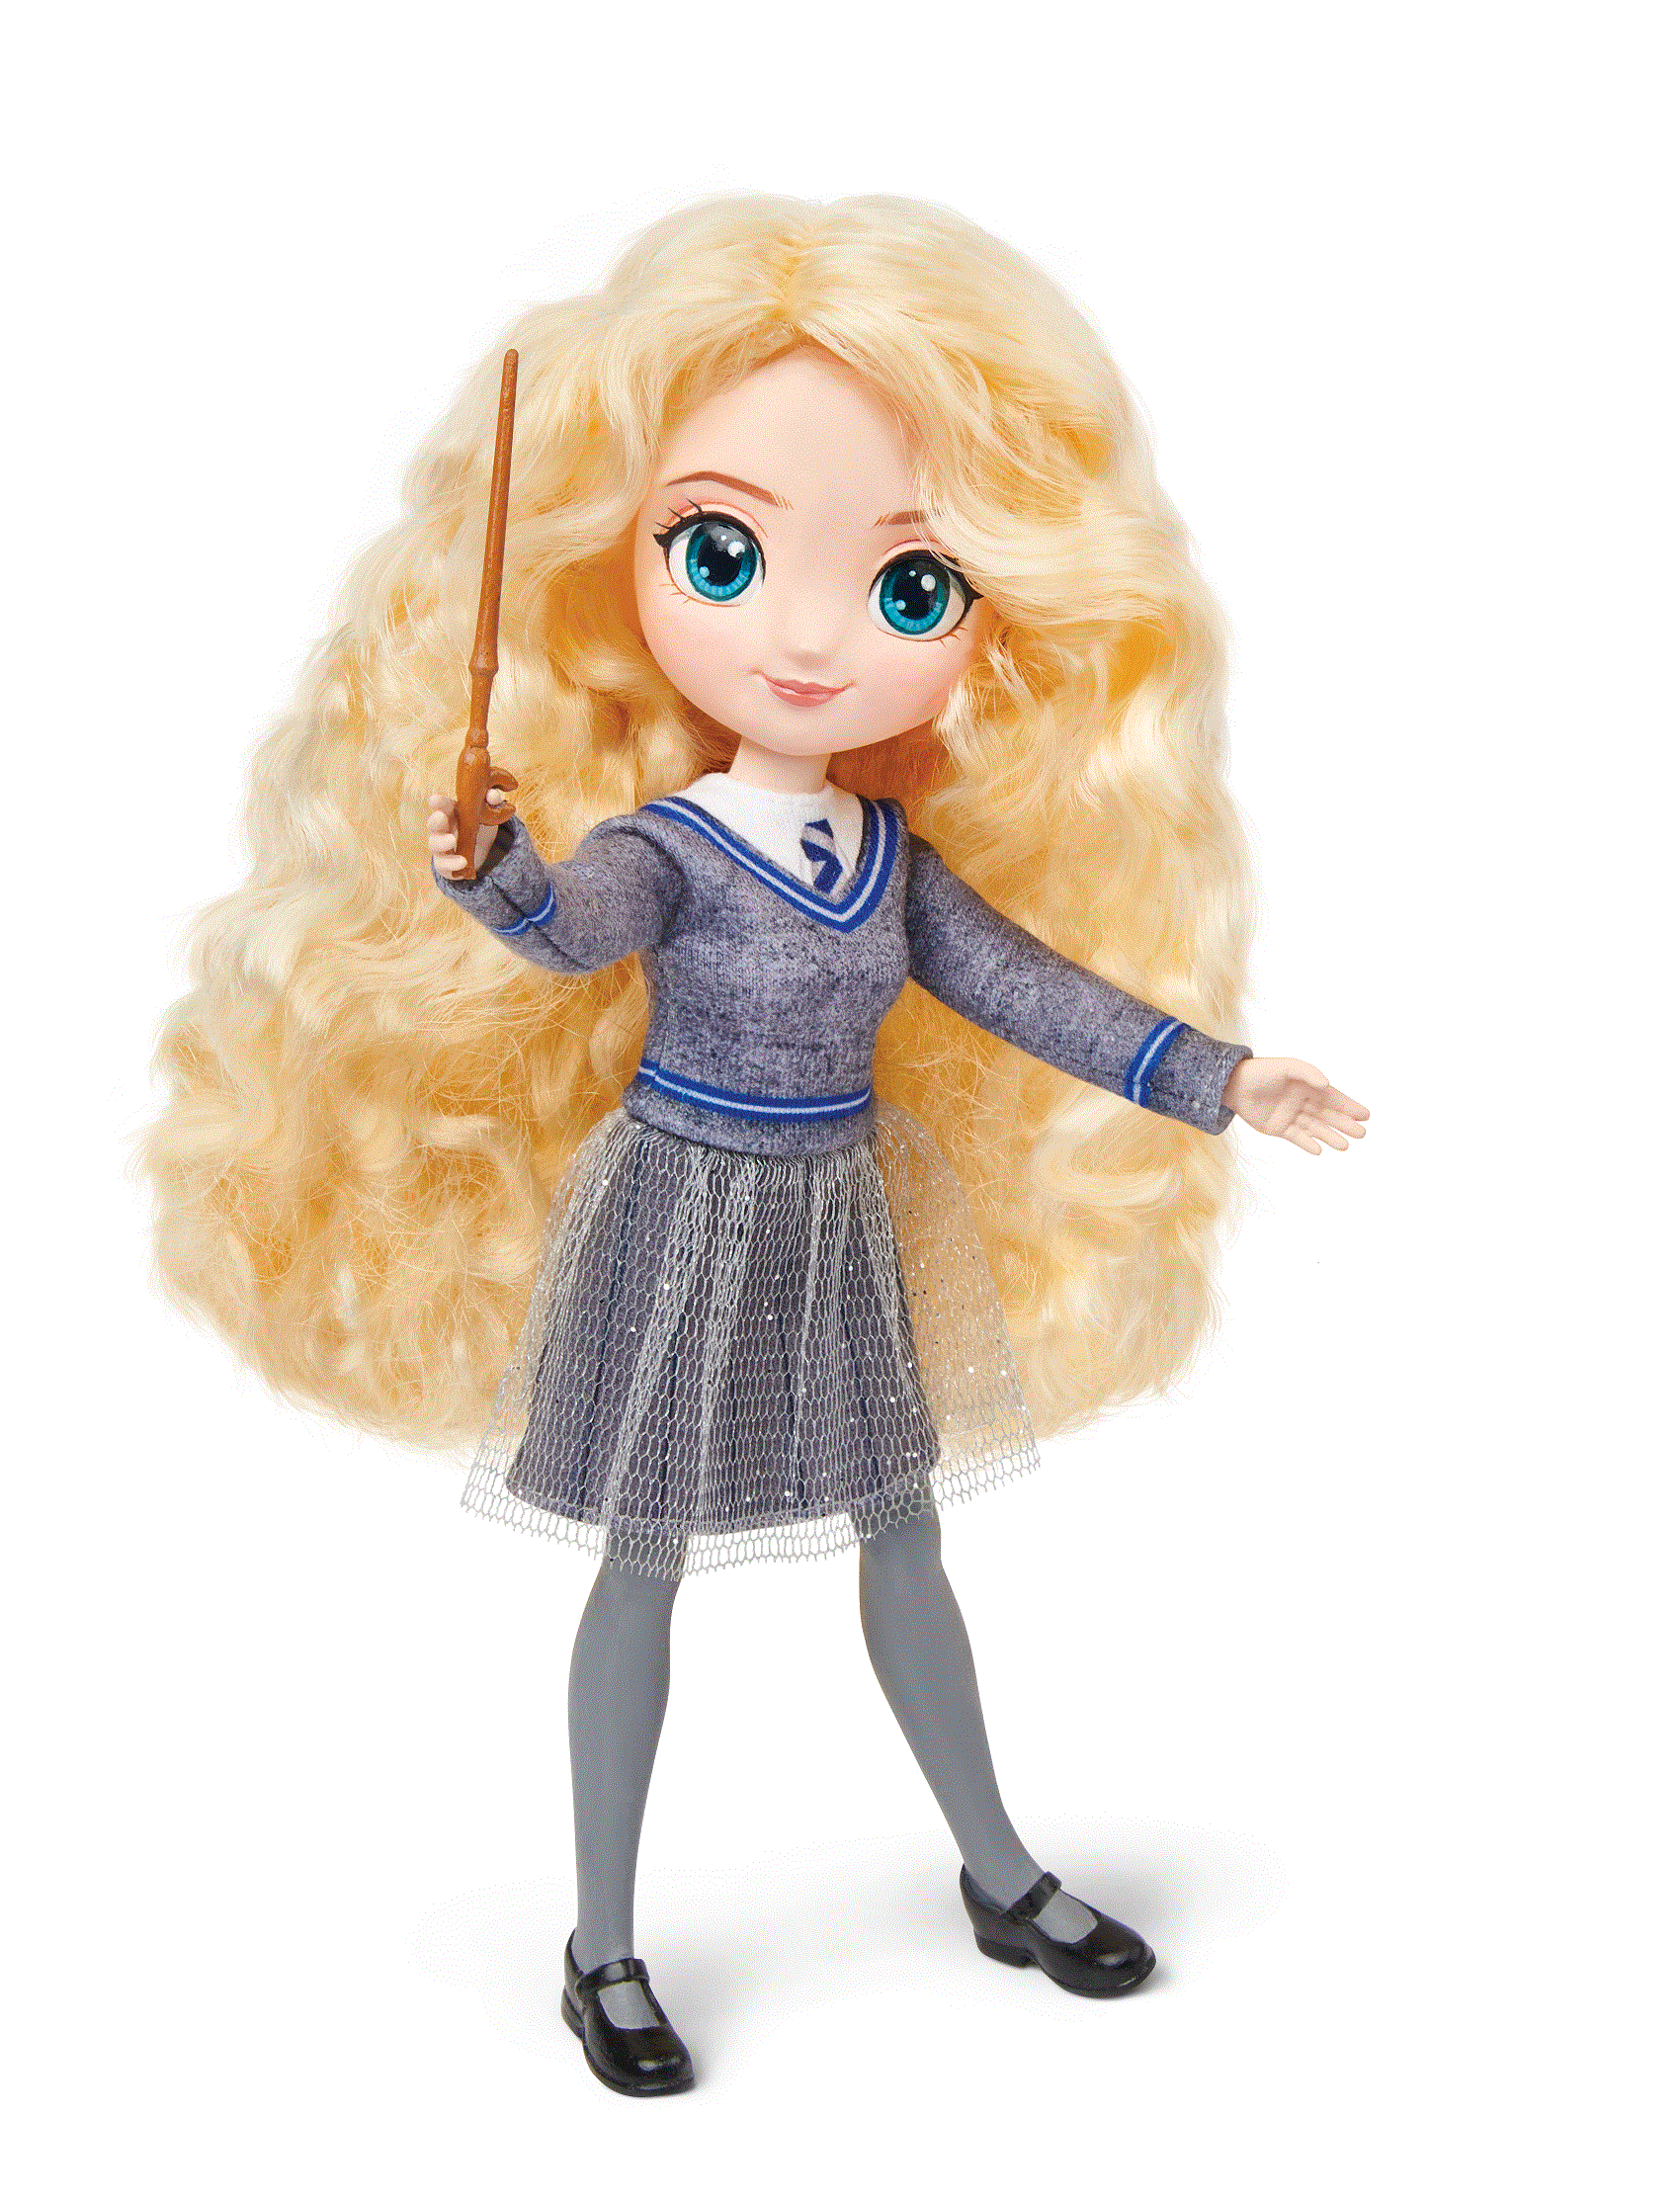 Fashion Doll: Harry Potter- Luna Lovegood 8 inch